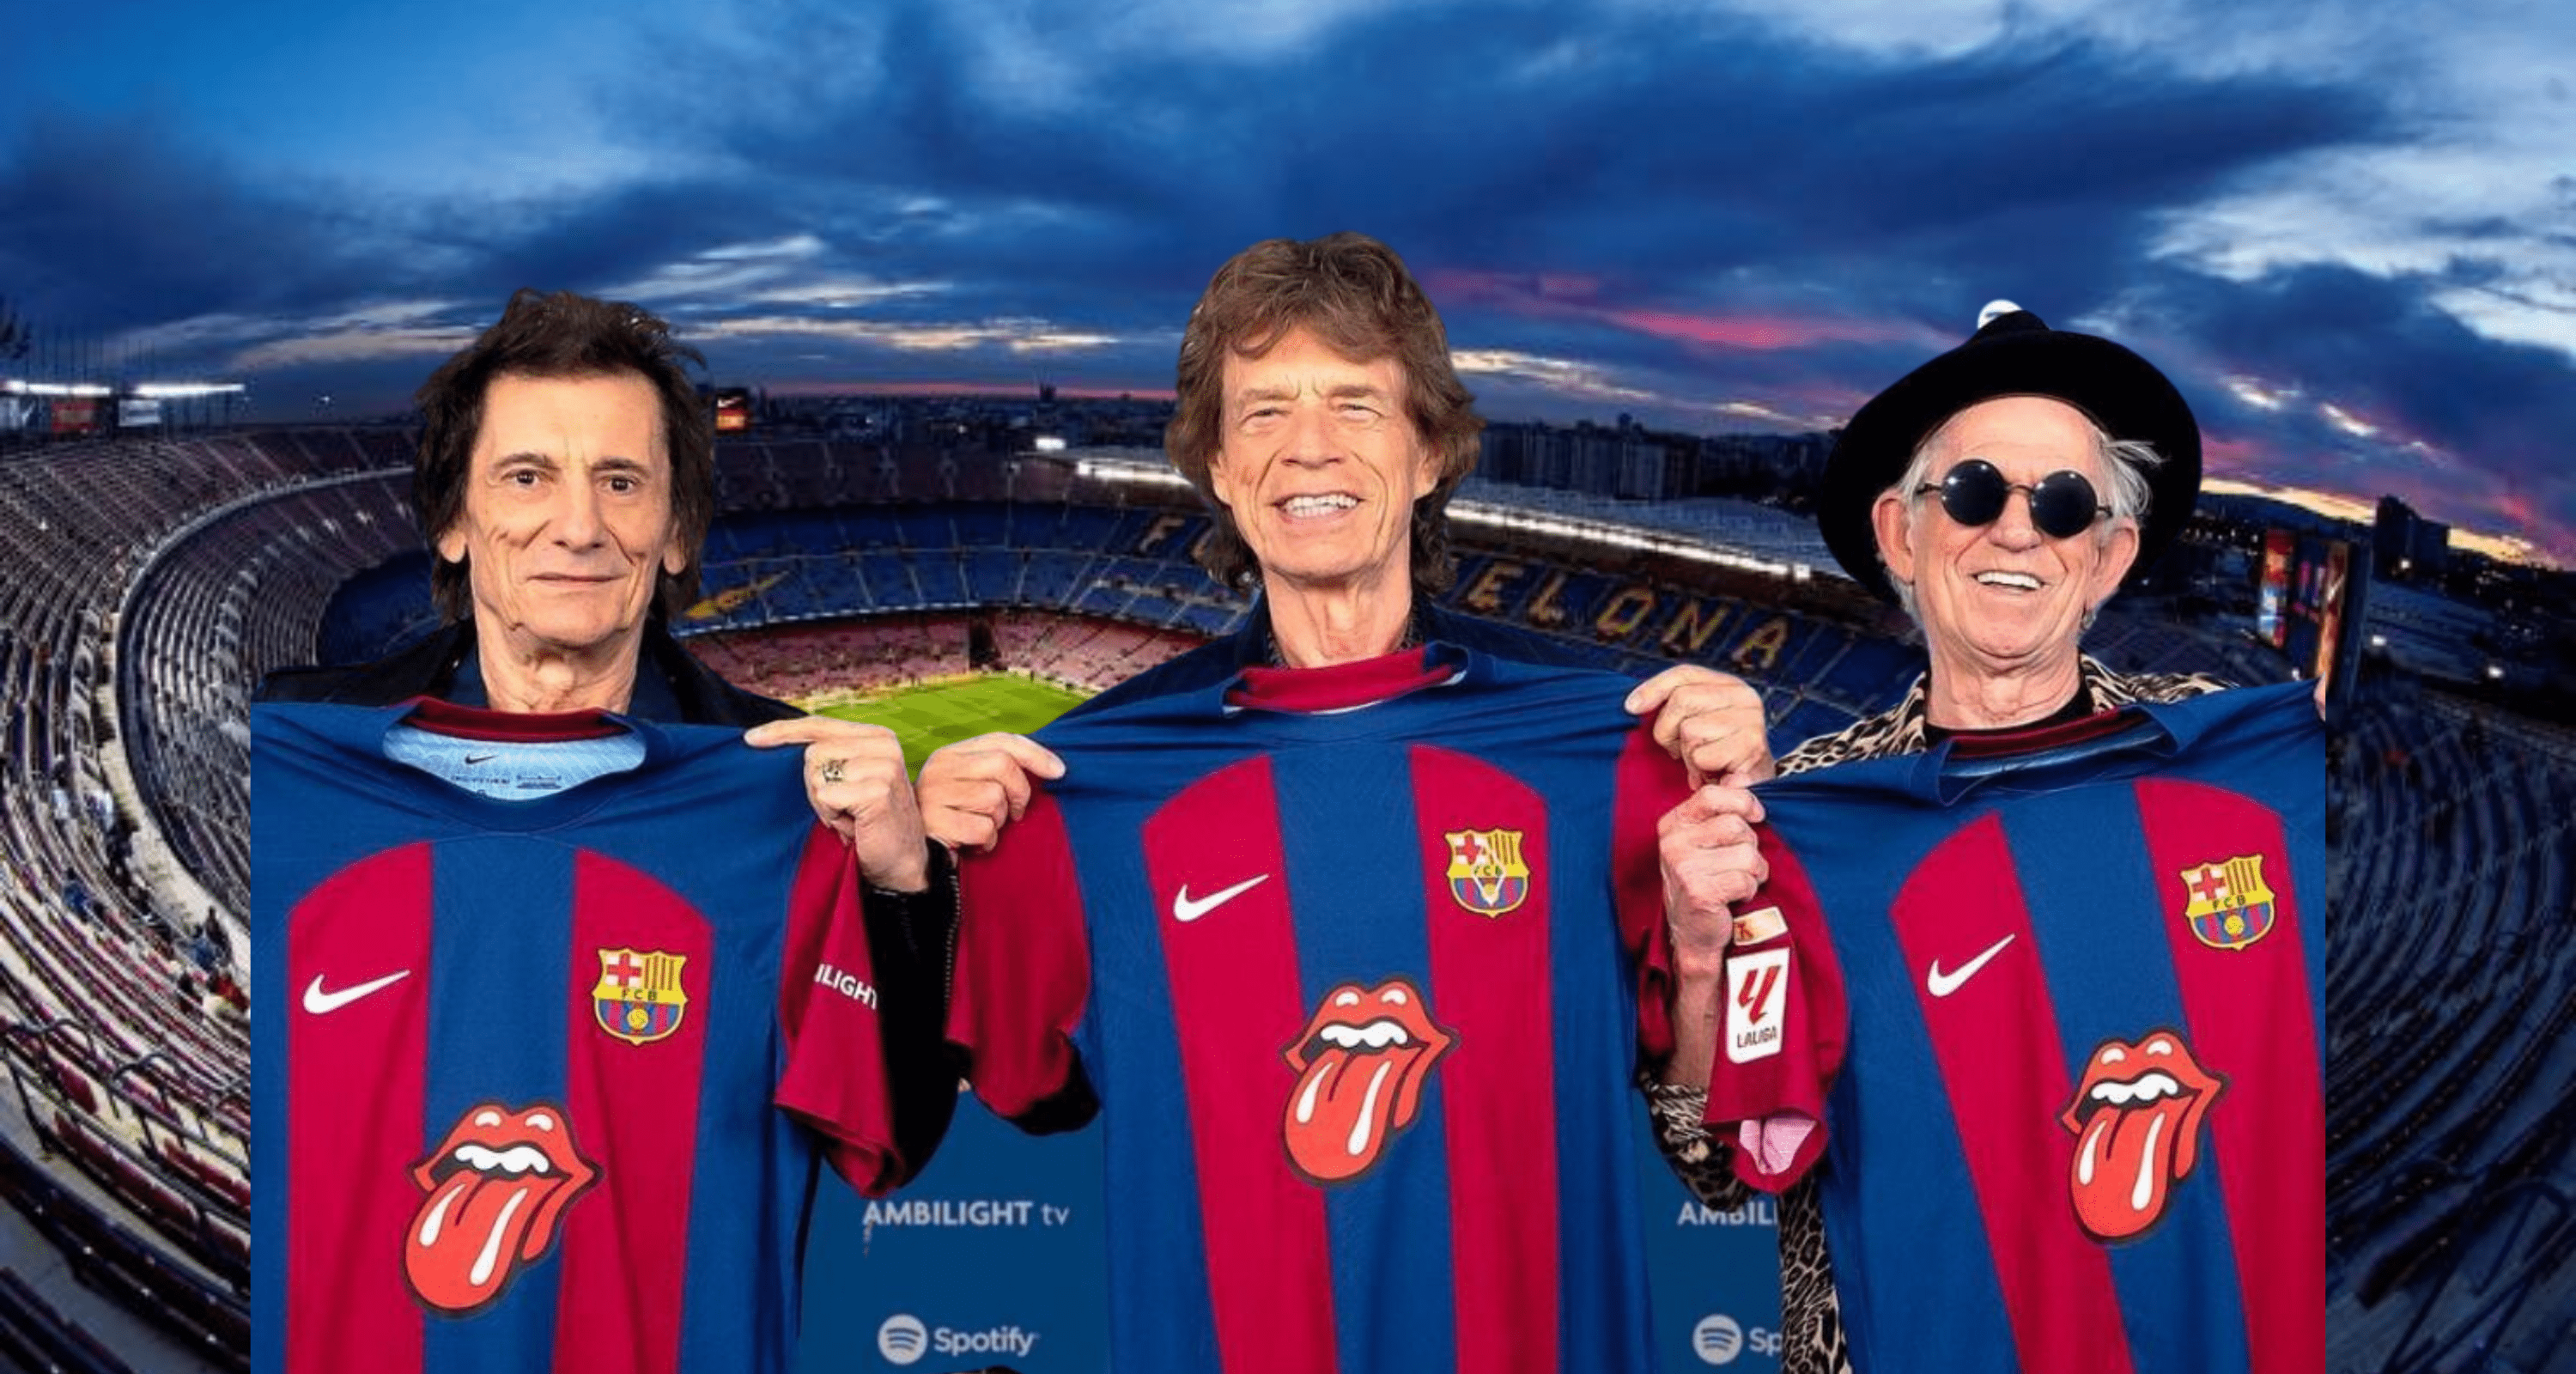 Los Rolling Stones lanzan 2 productos más con la marca Barça a un exorbitante  precio